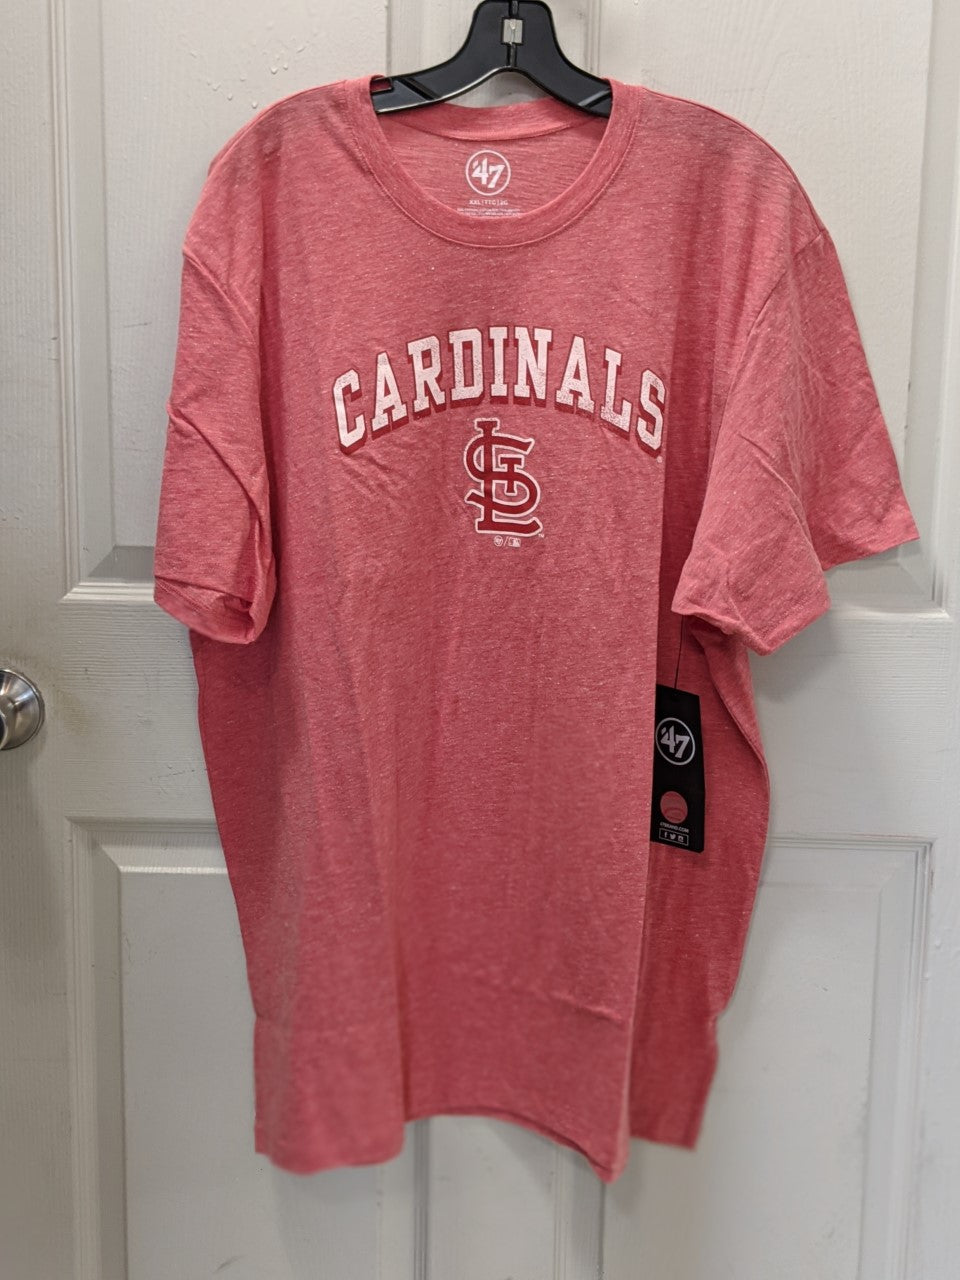 St. Louis Cardinals T-Shirts, Cardinals Tees, St. Louis Cardinals Shirts